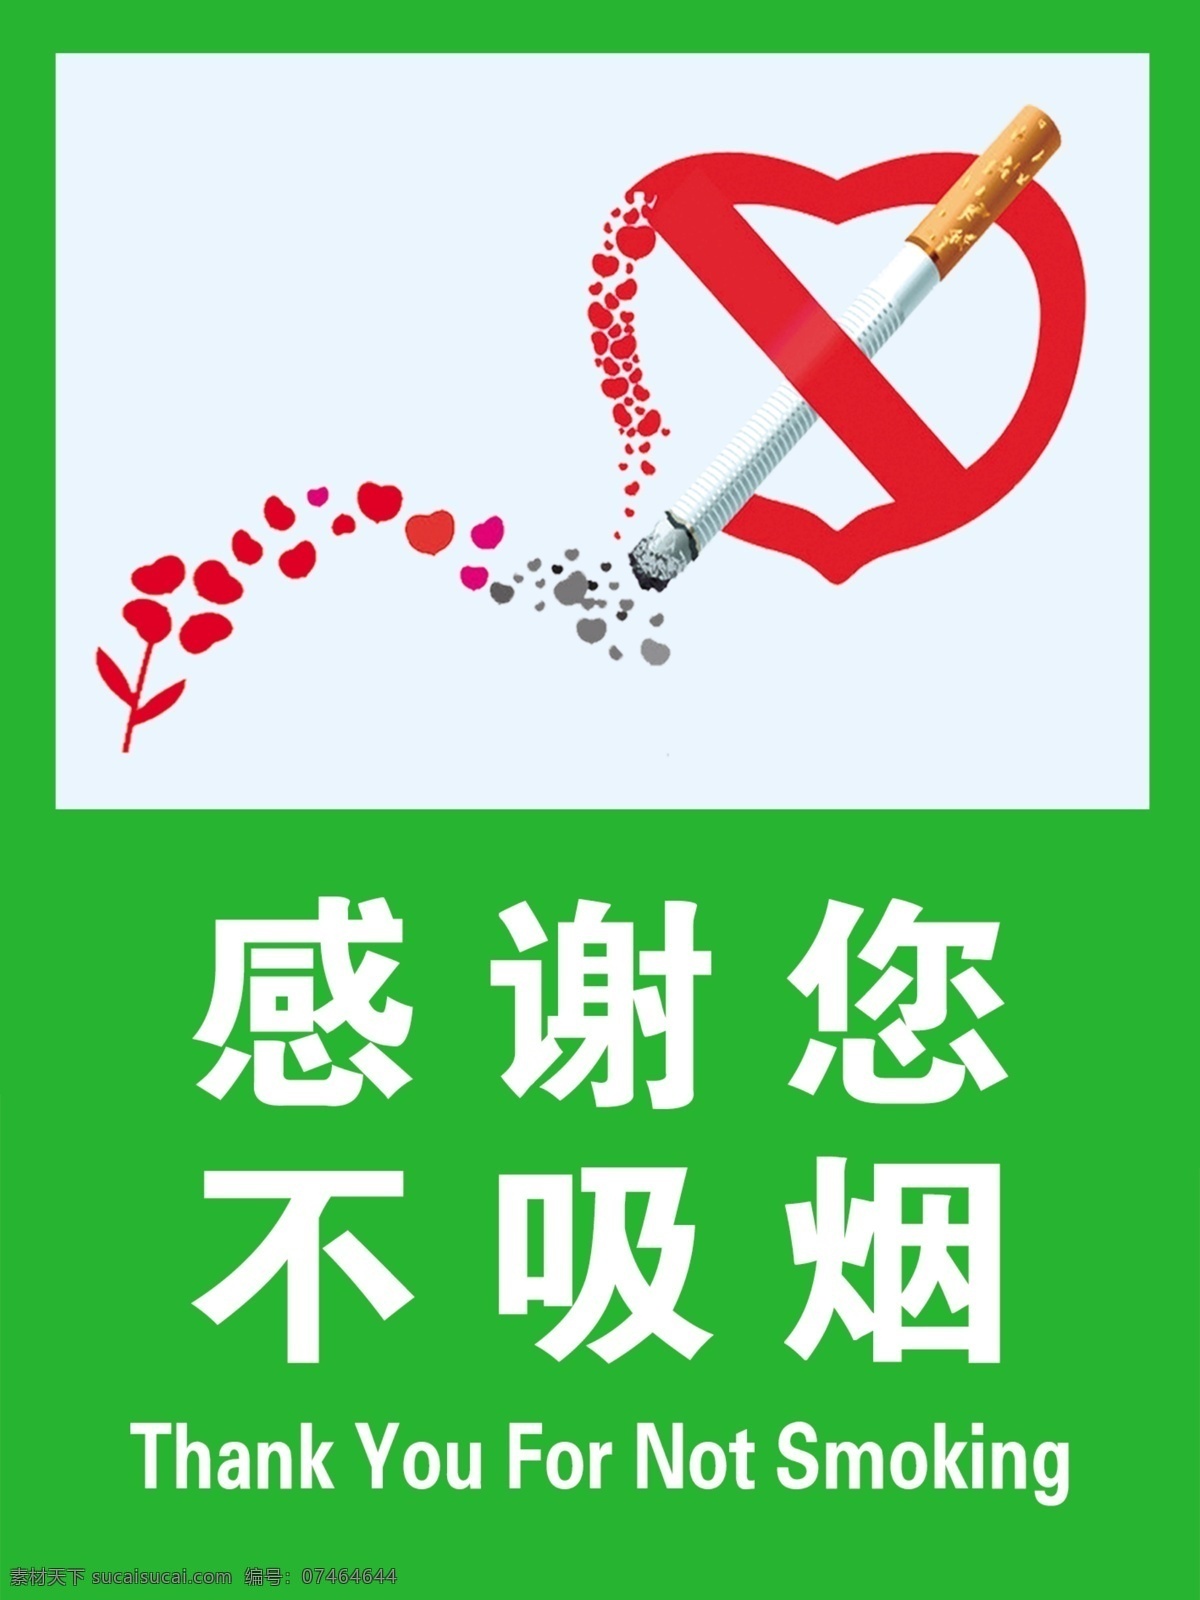 不吸烟海报 禁烟海报 禁止吸烟 温馨提示 谢绝吸烟 吸烟有害健康 办公区 花儿 感谢你不吸烟